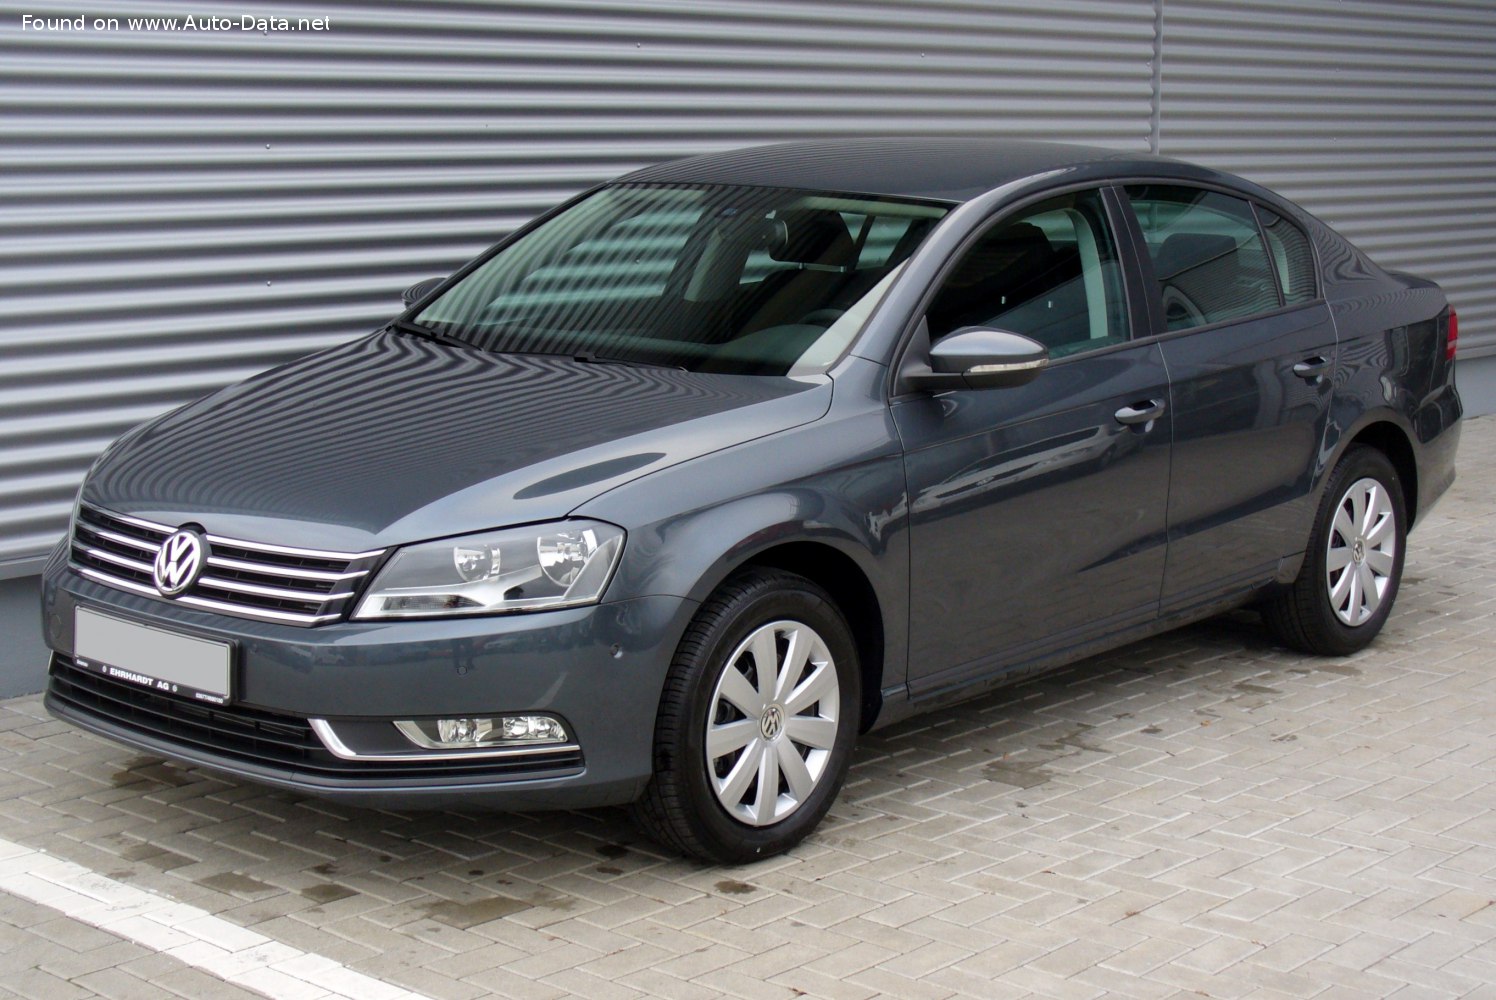 2010 Volkswagen Passat (B7) 2.0 TDI (140 PS)  Technische Daten, Verbrauch,  Spezifikationen, Maße